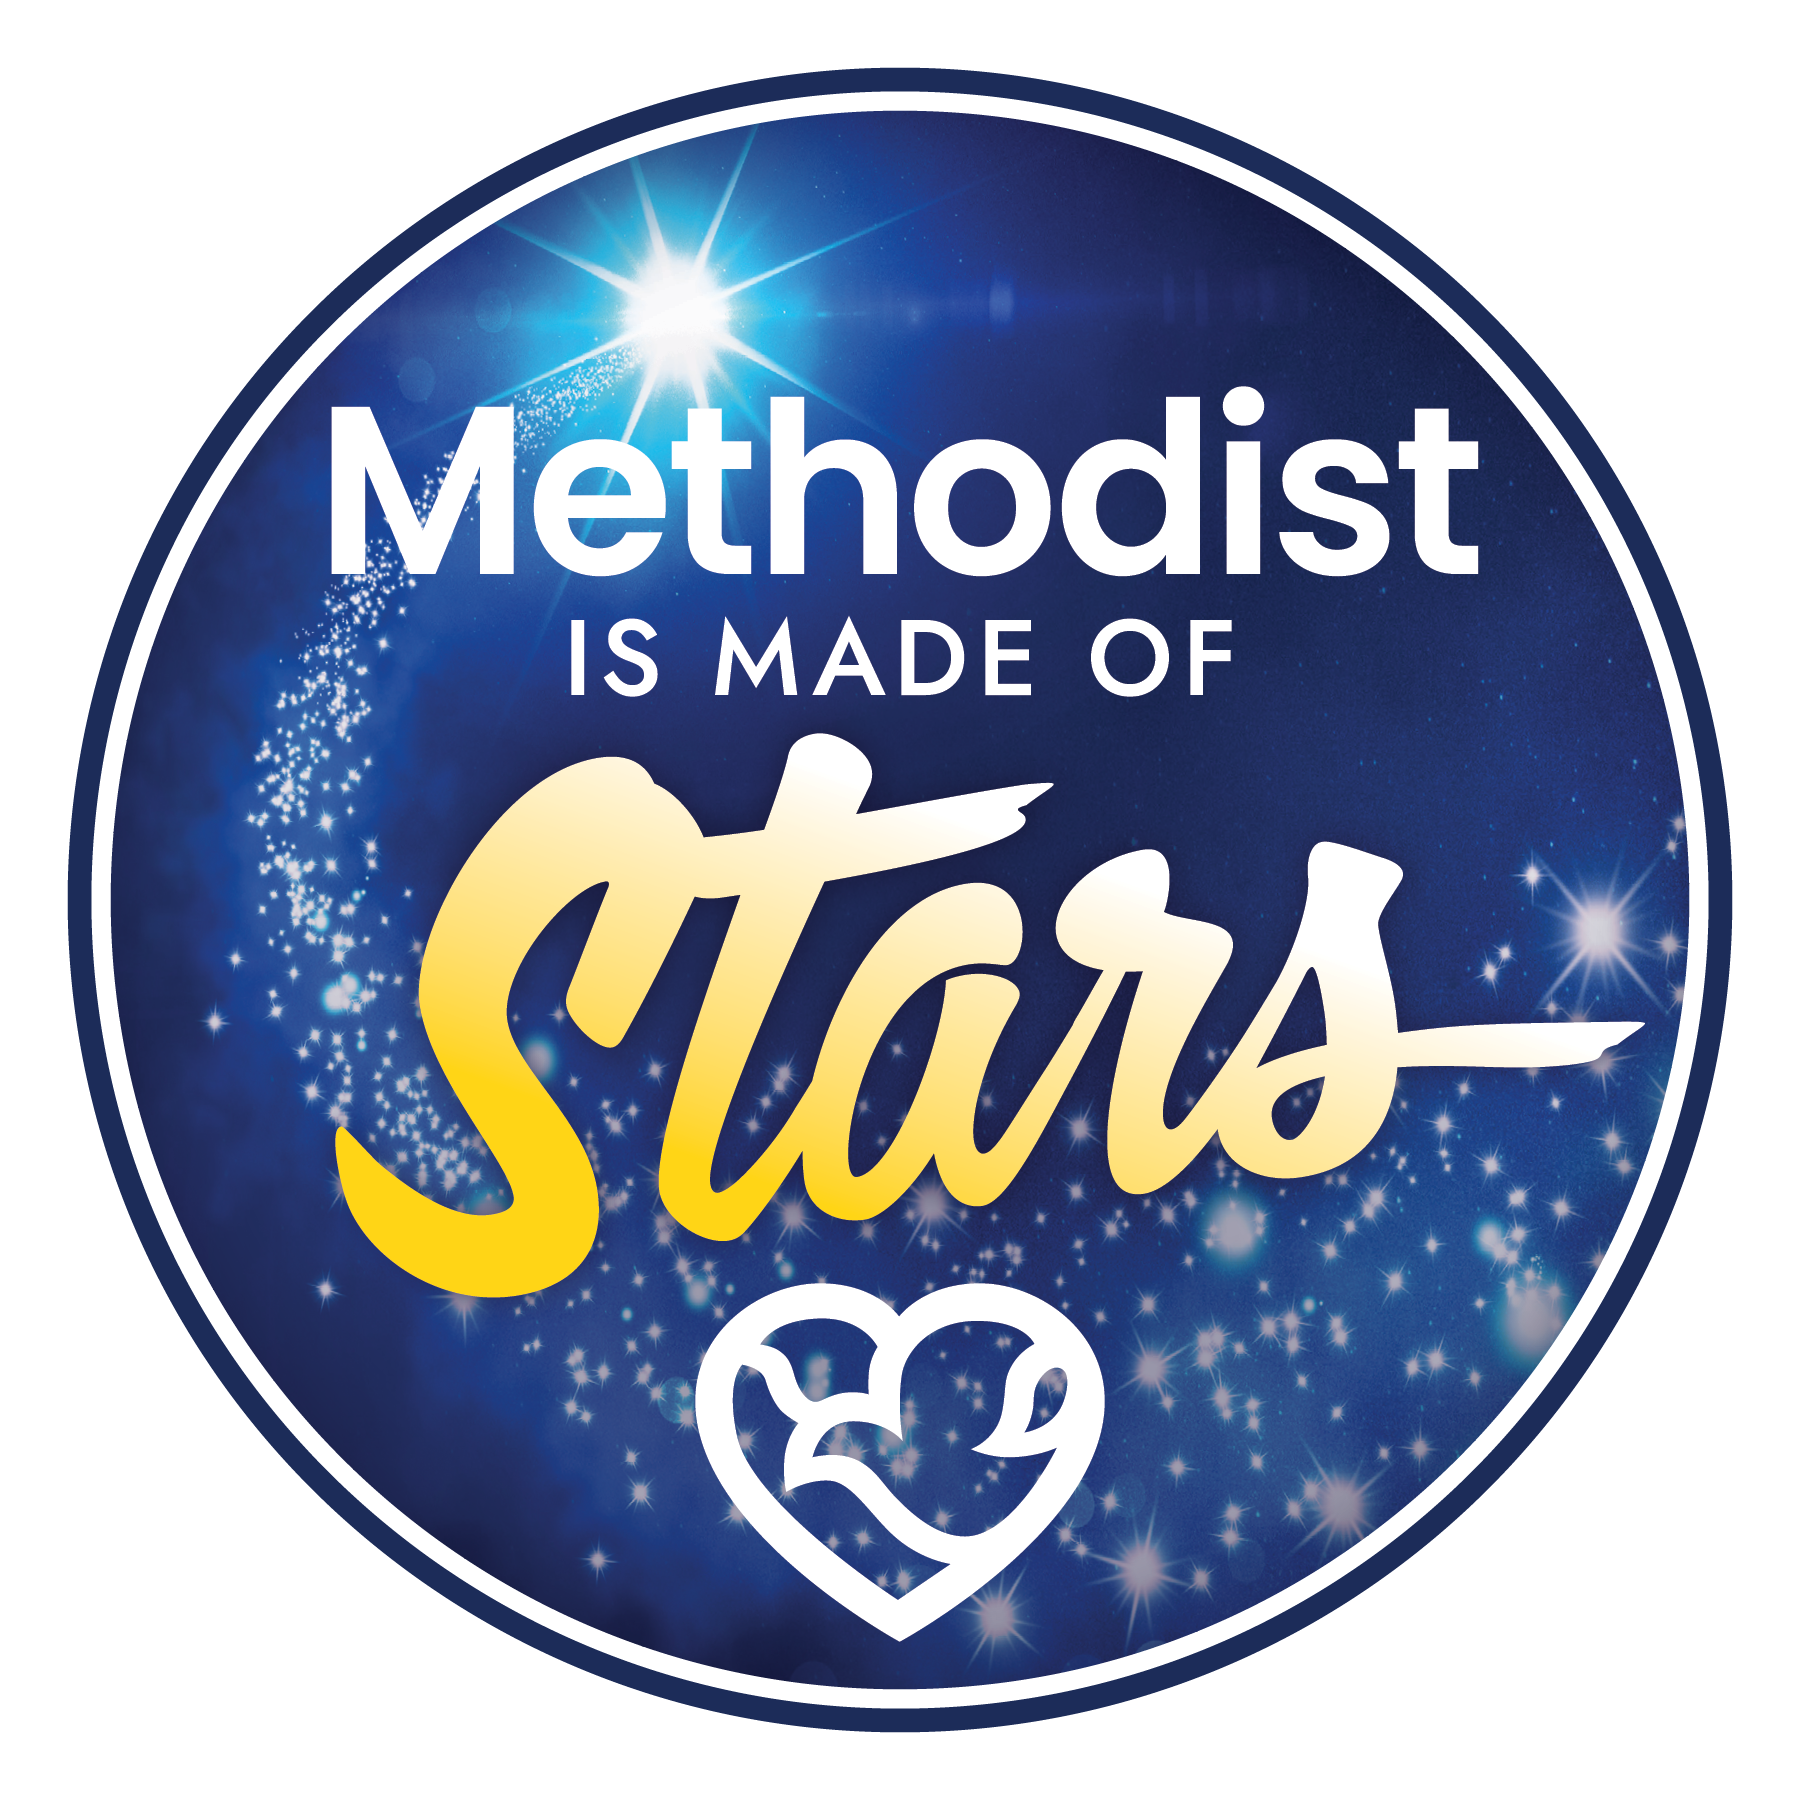 Methodist is made of stars